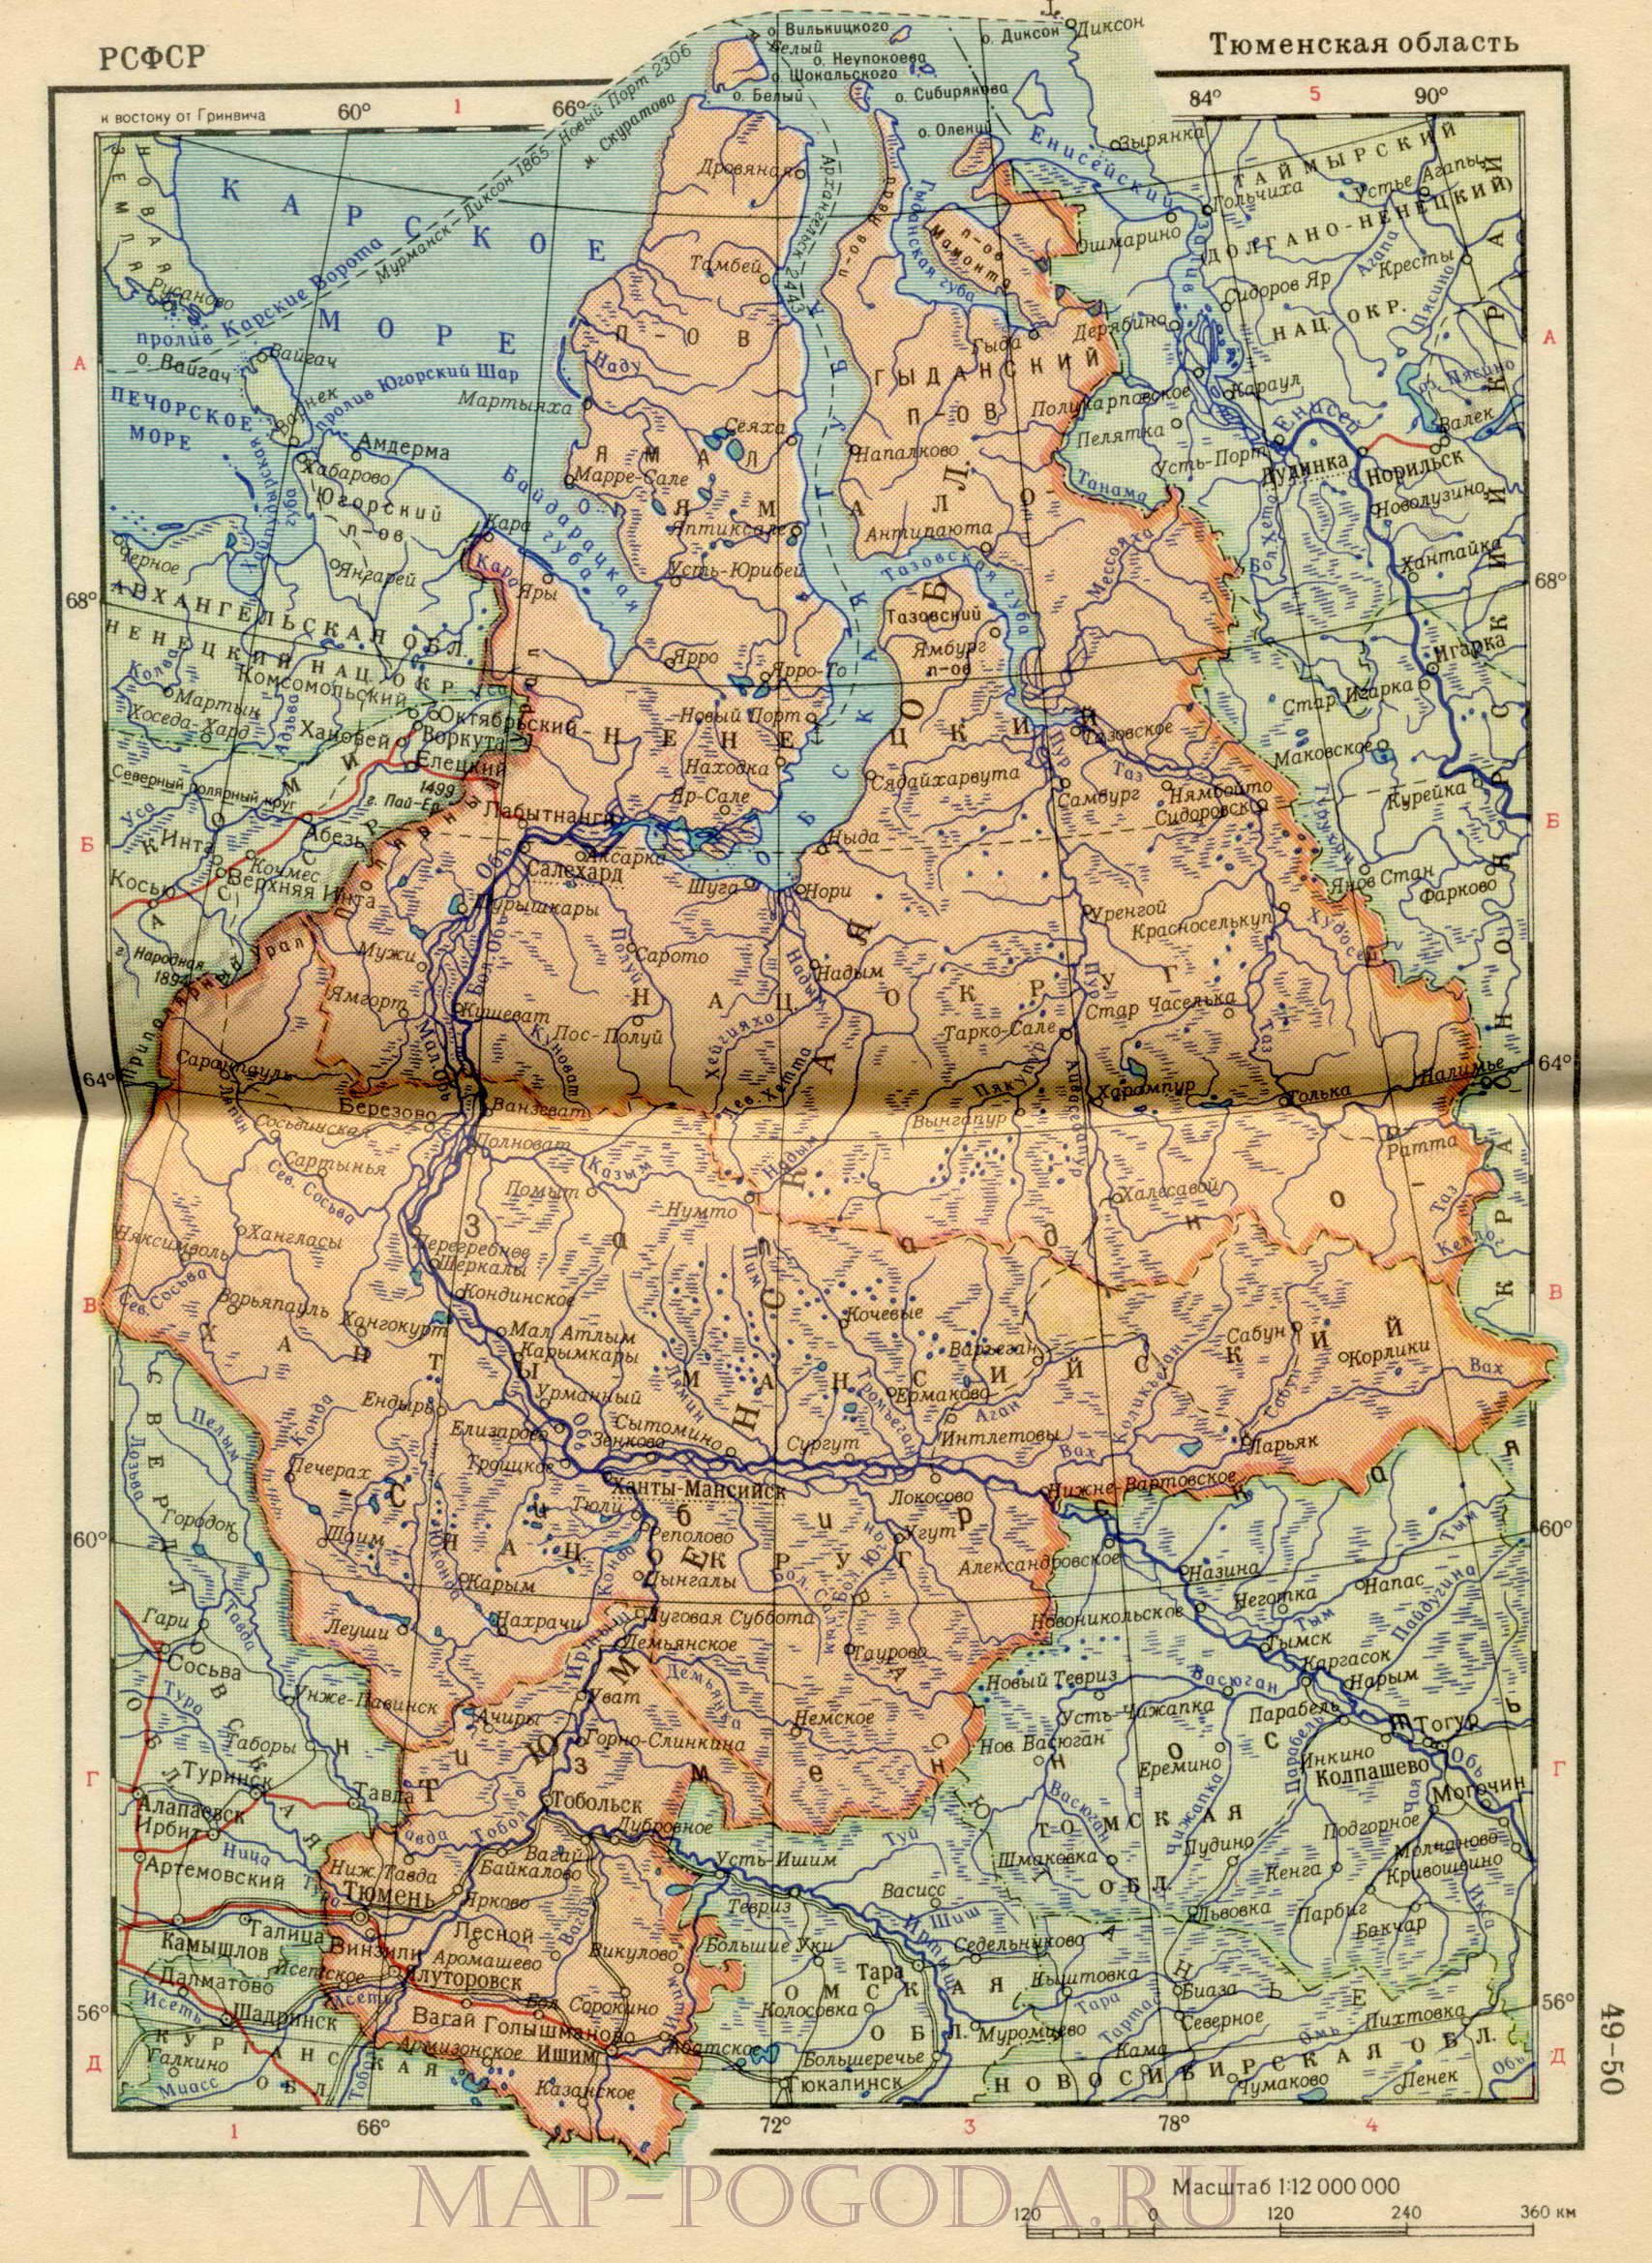 Карта Тюмени Фото